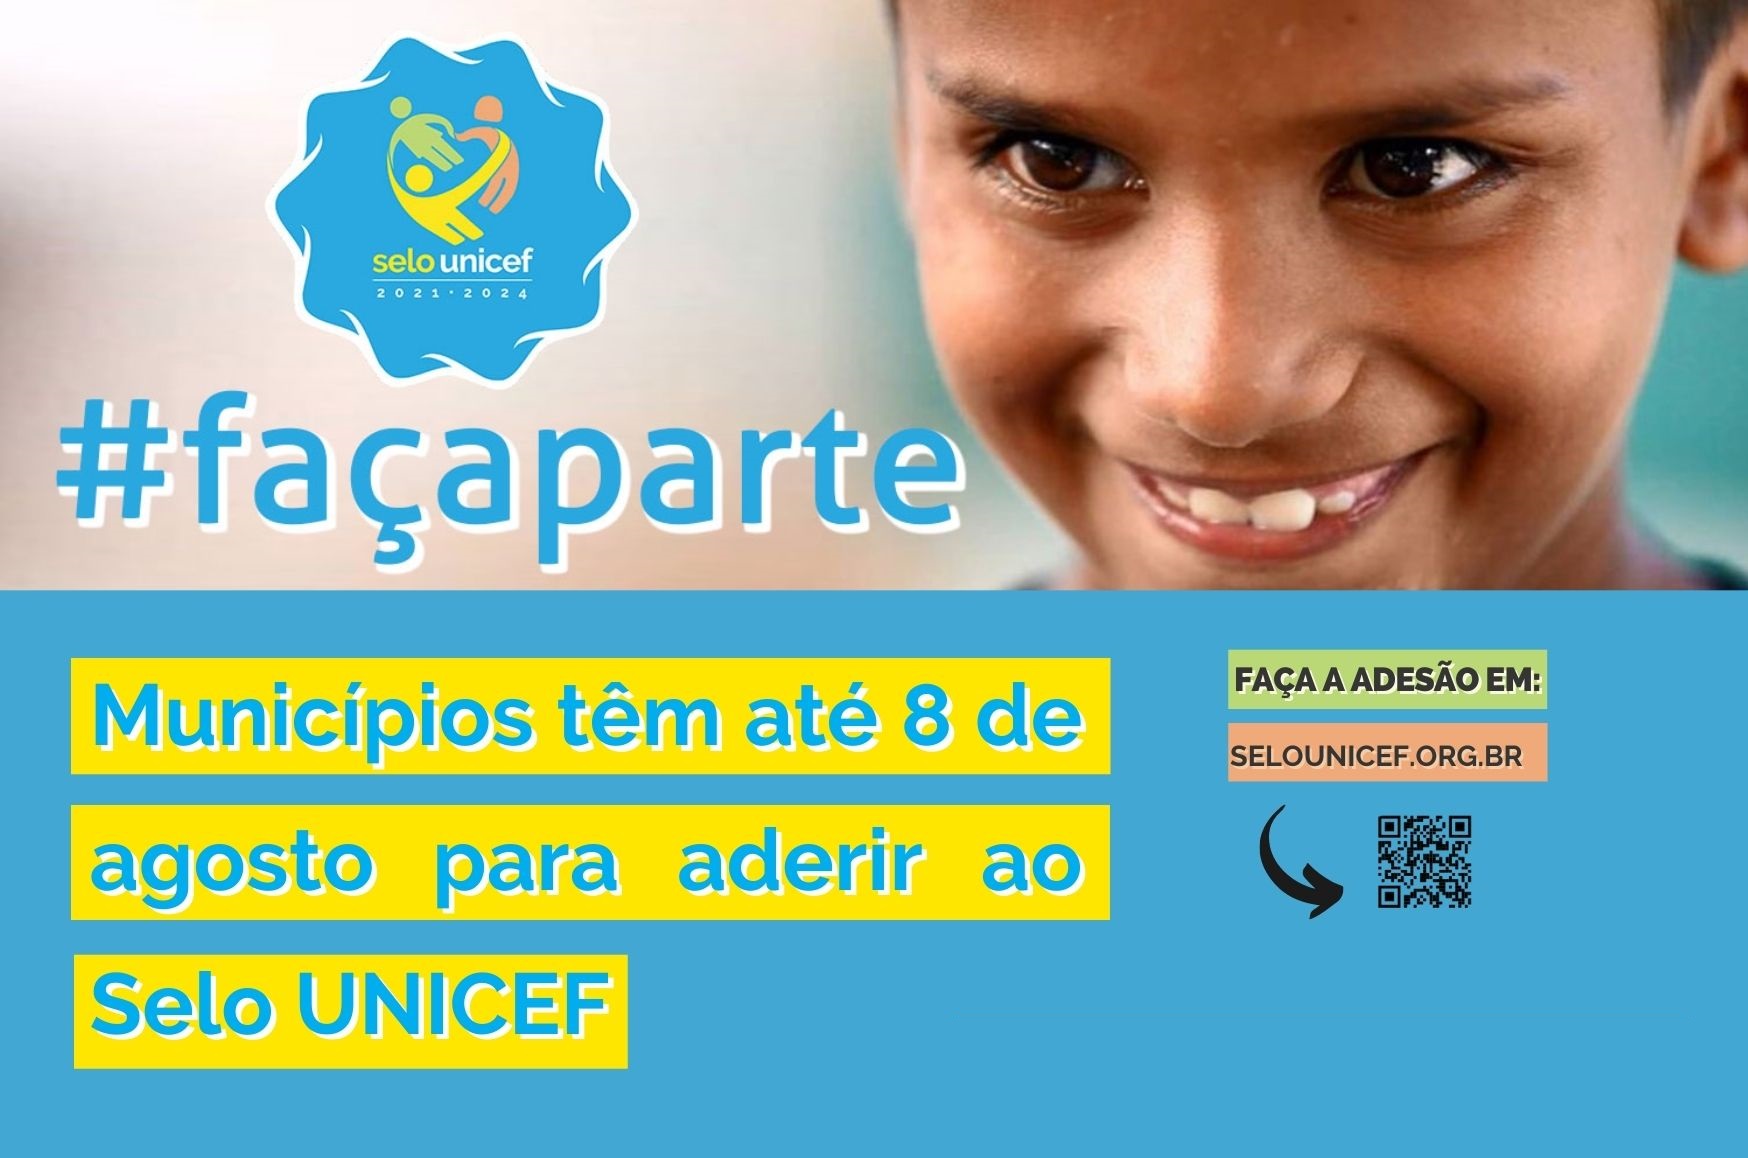 Texto mostra imagem de garoto sorrindo e a hashtag #FaçaParte. Abaixo, temos as seguintes informações: Municípios têm até o dia 8 de agosto para aderir ao Selo UNICEF e Faça a adesão em www.selounicef.org.br